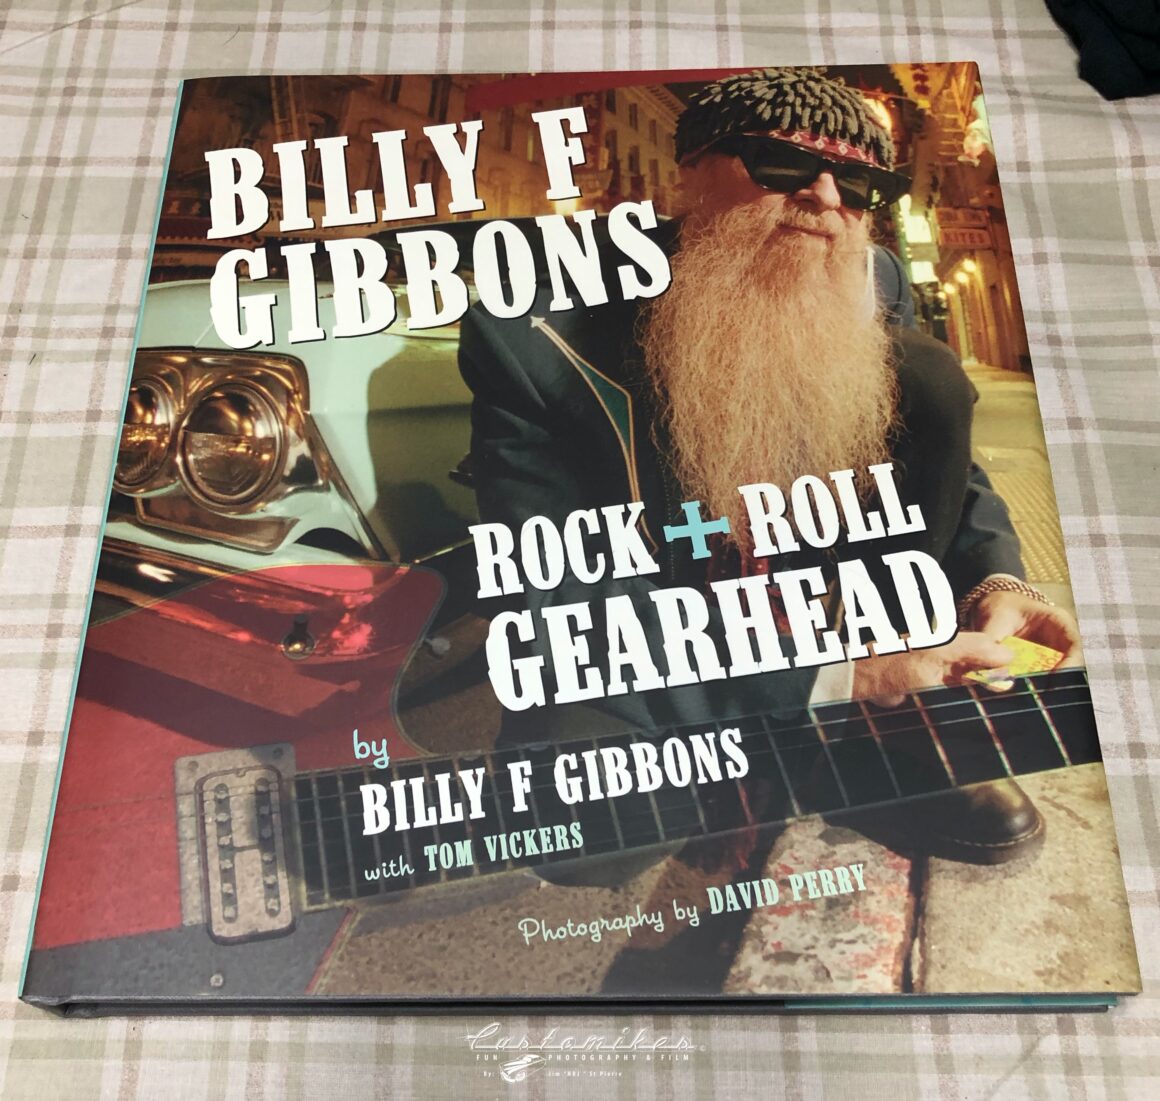 https://www.amazon.com/Billy-Gibbons-Rock-Roll-Gearhead/dp/0760340307